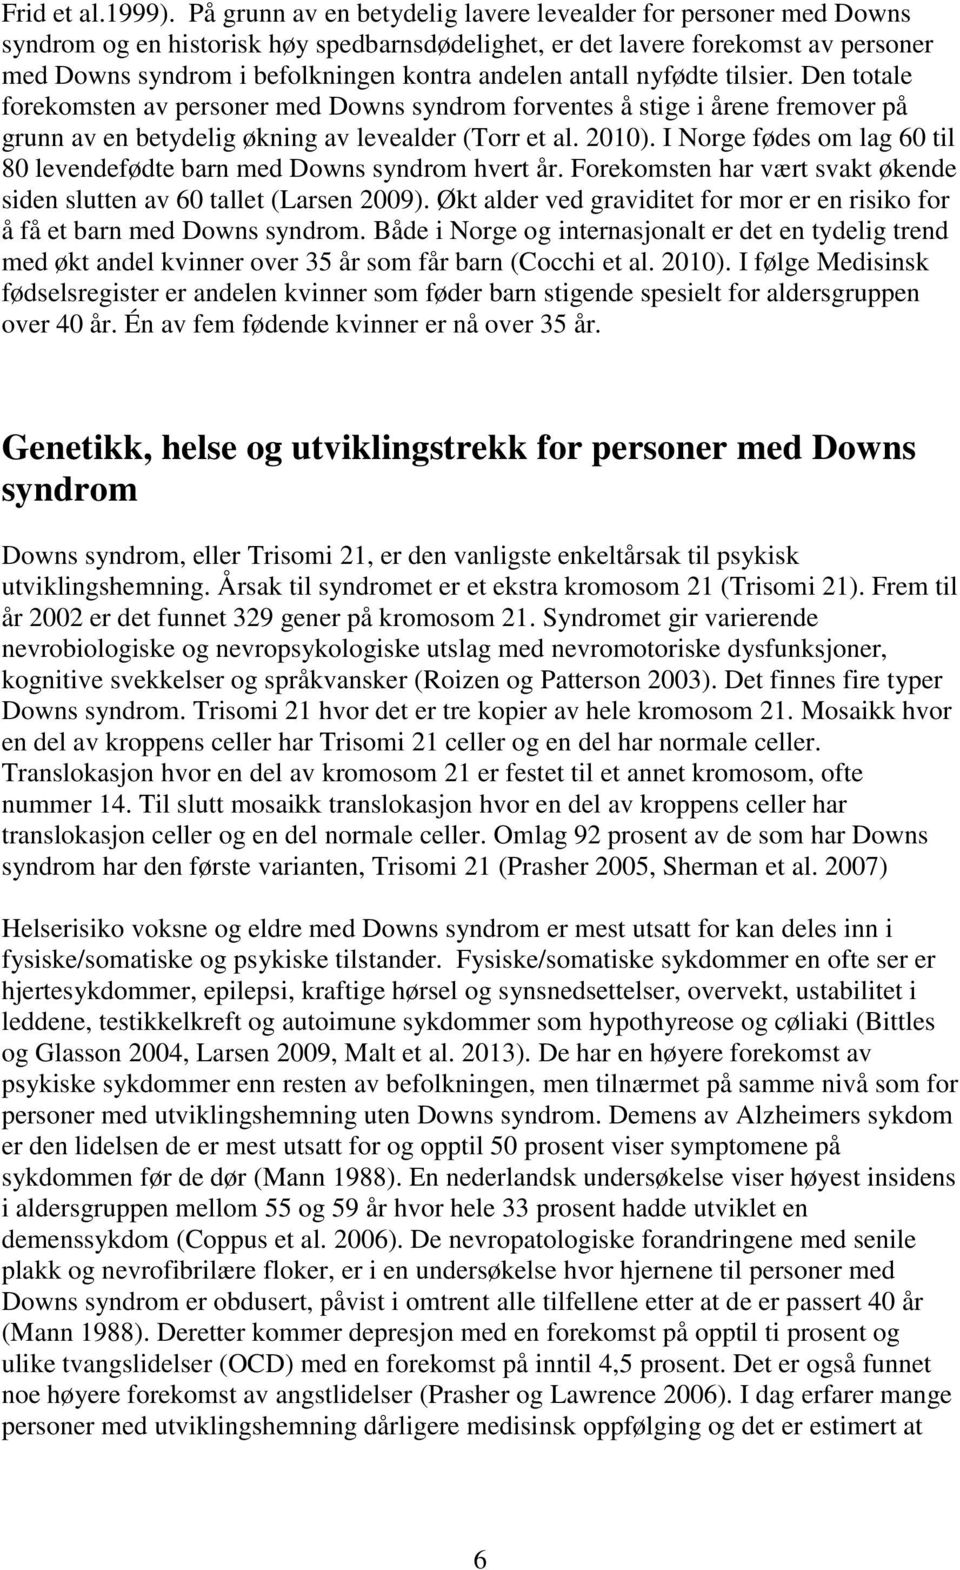 antall nyfødte tilsier. Den totale forekomsten av personer med Downs syndrom forventes å stige i årene fremover på grunn av en betydelig økning av levealder (Torr et al. 2010).